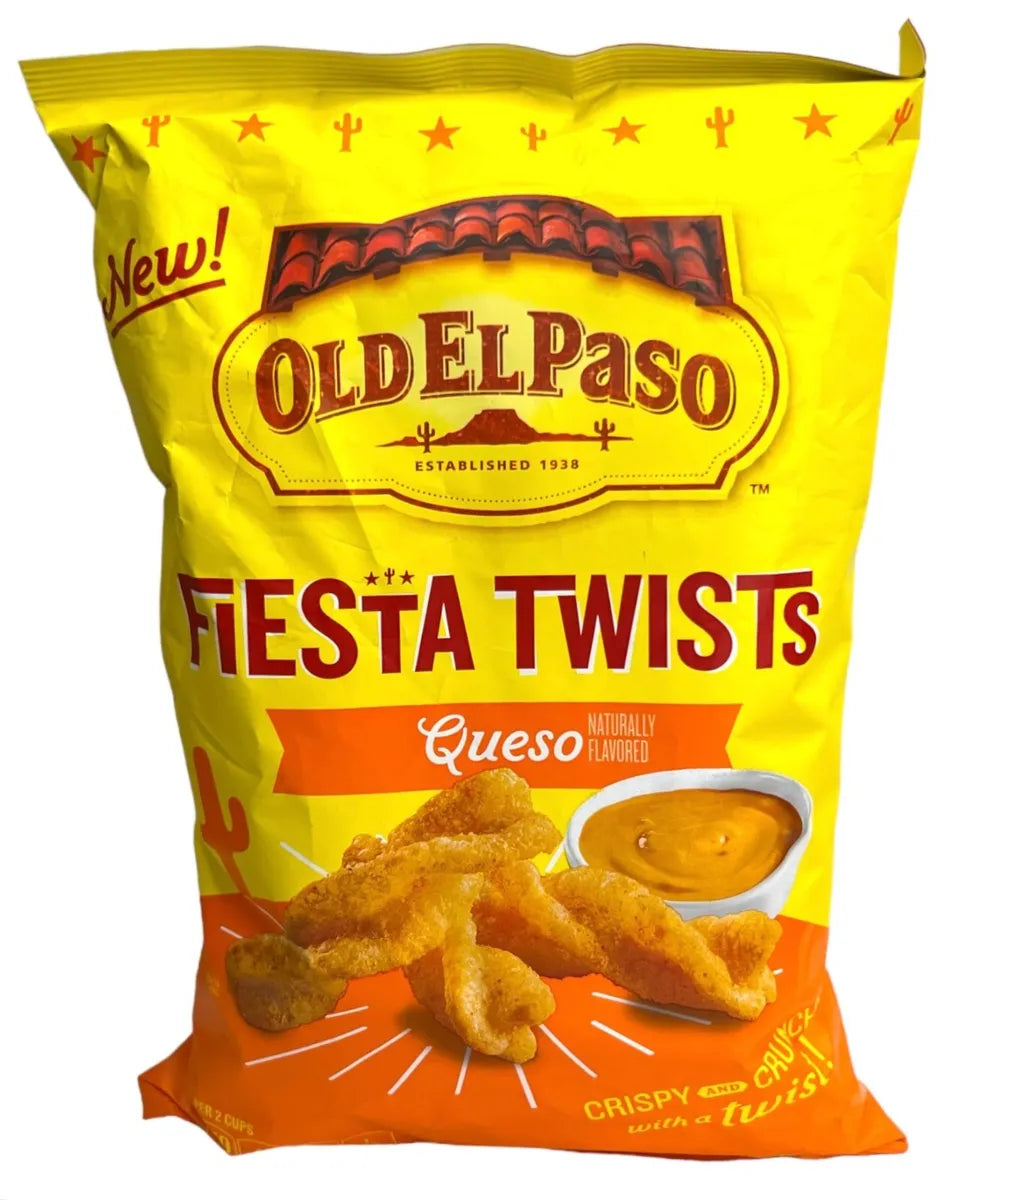 Old El Paso Fiesta Twists: Queso (2oz)